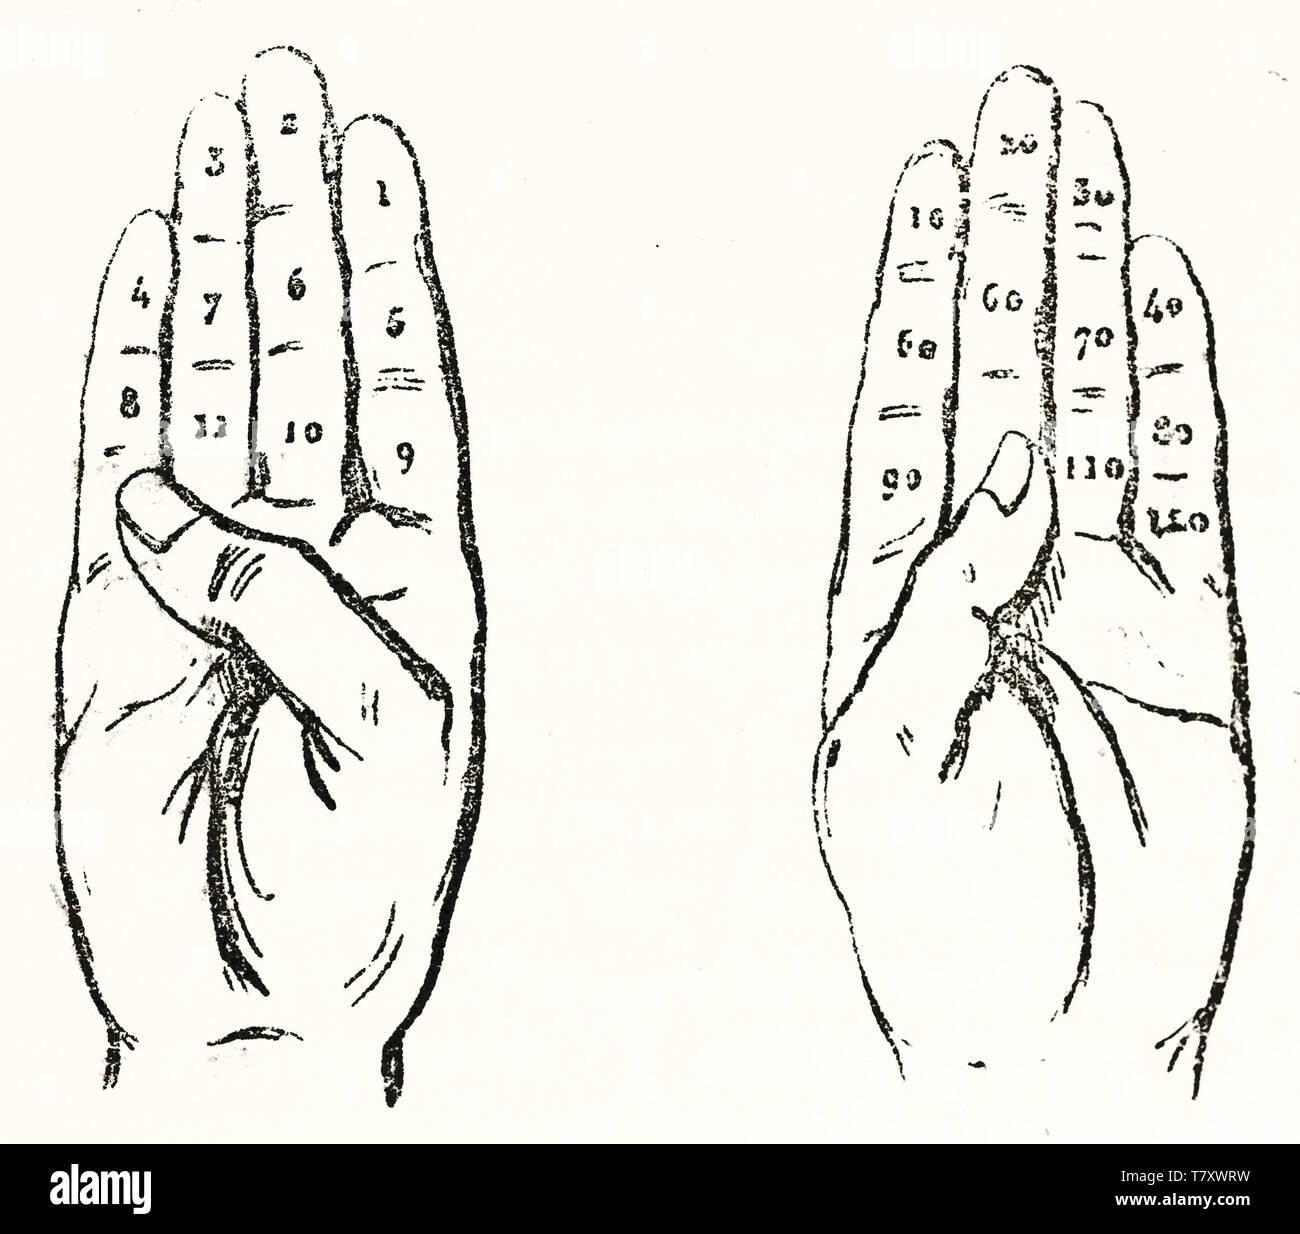 La palma de la mano izquierda y derecha con números dibujados en cada dedo. Antiguo duodecimal ilustración acerca de cálculo en los dedos. Elementos aislados sobre fondo blanco. El Magasin pintoresco París 1848 Foto de stock